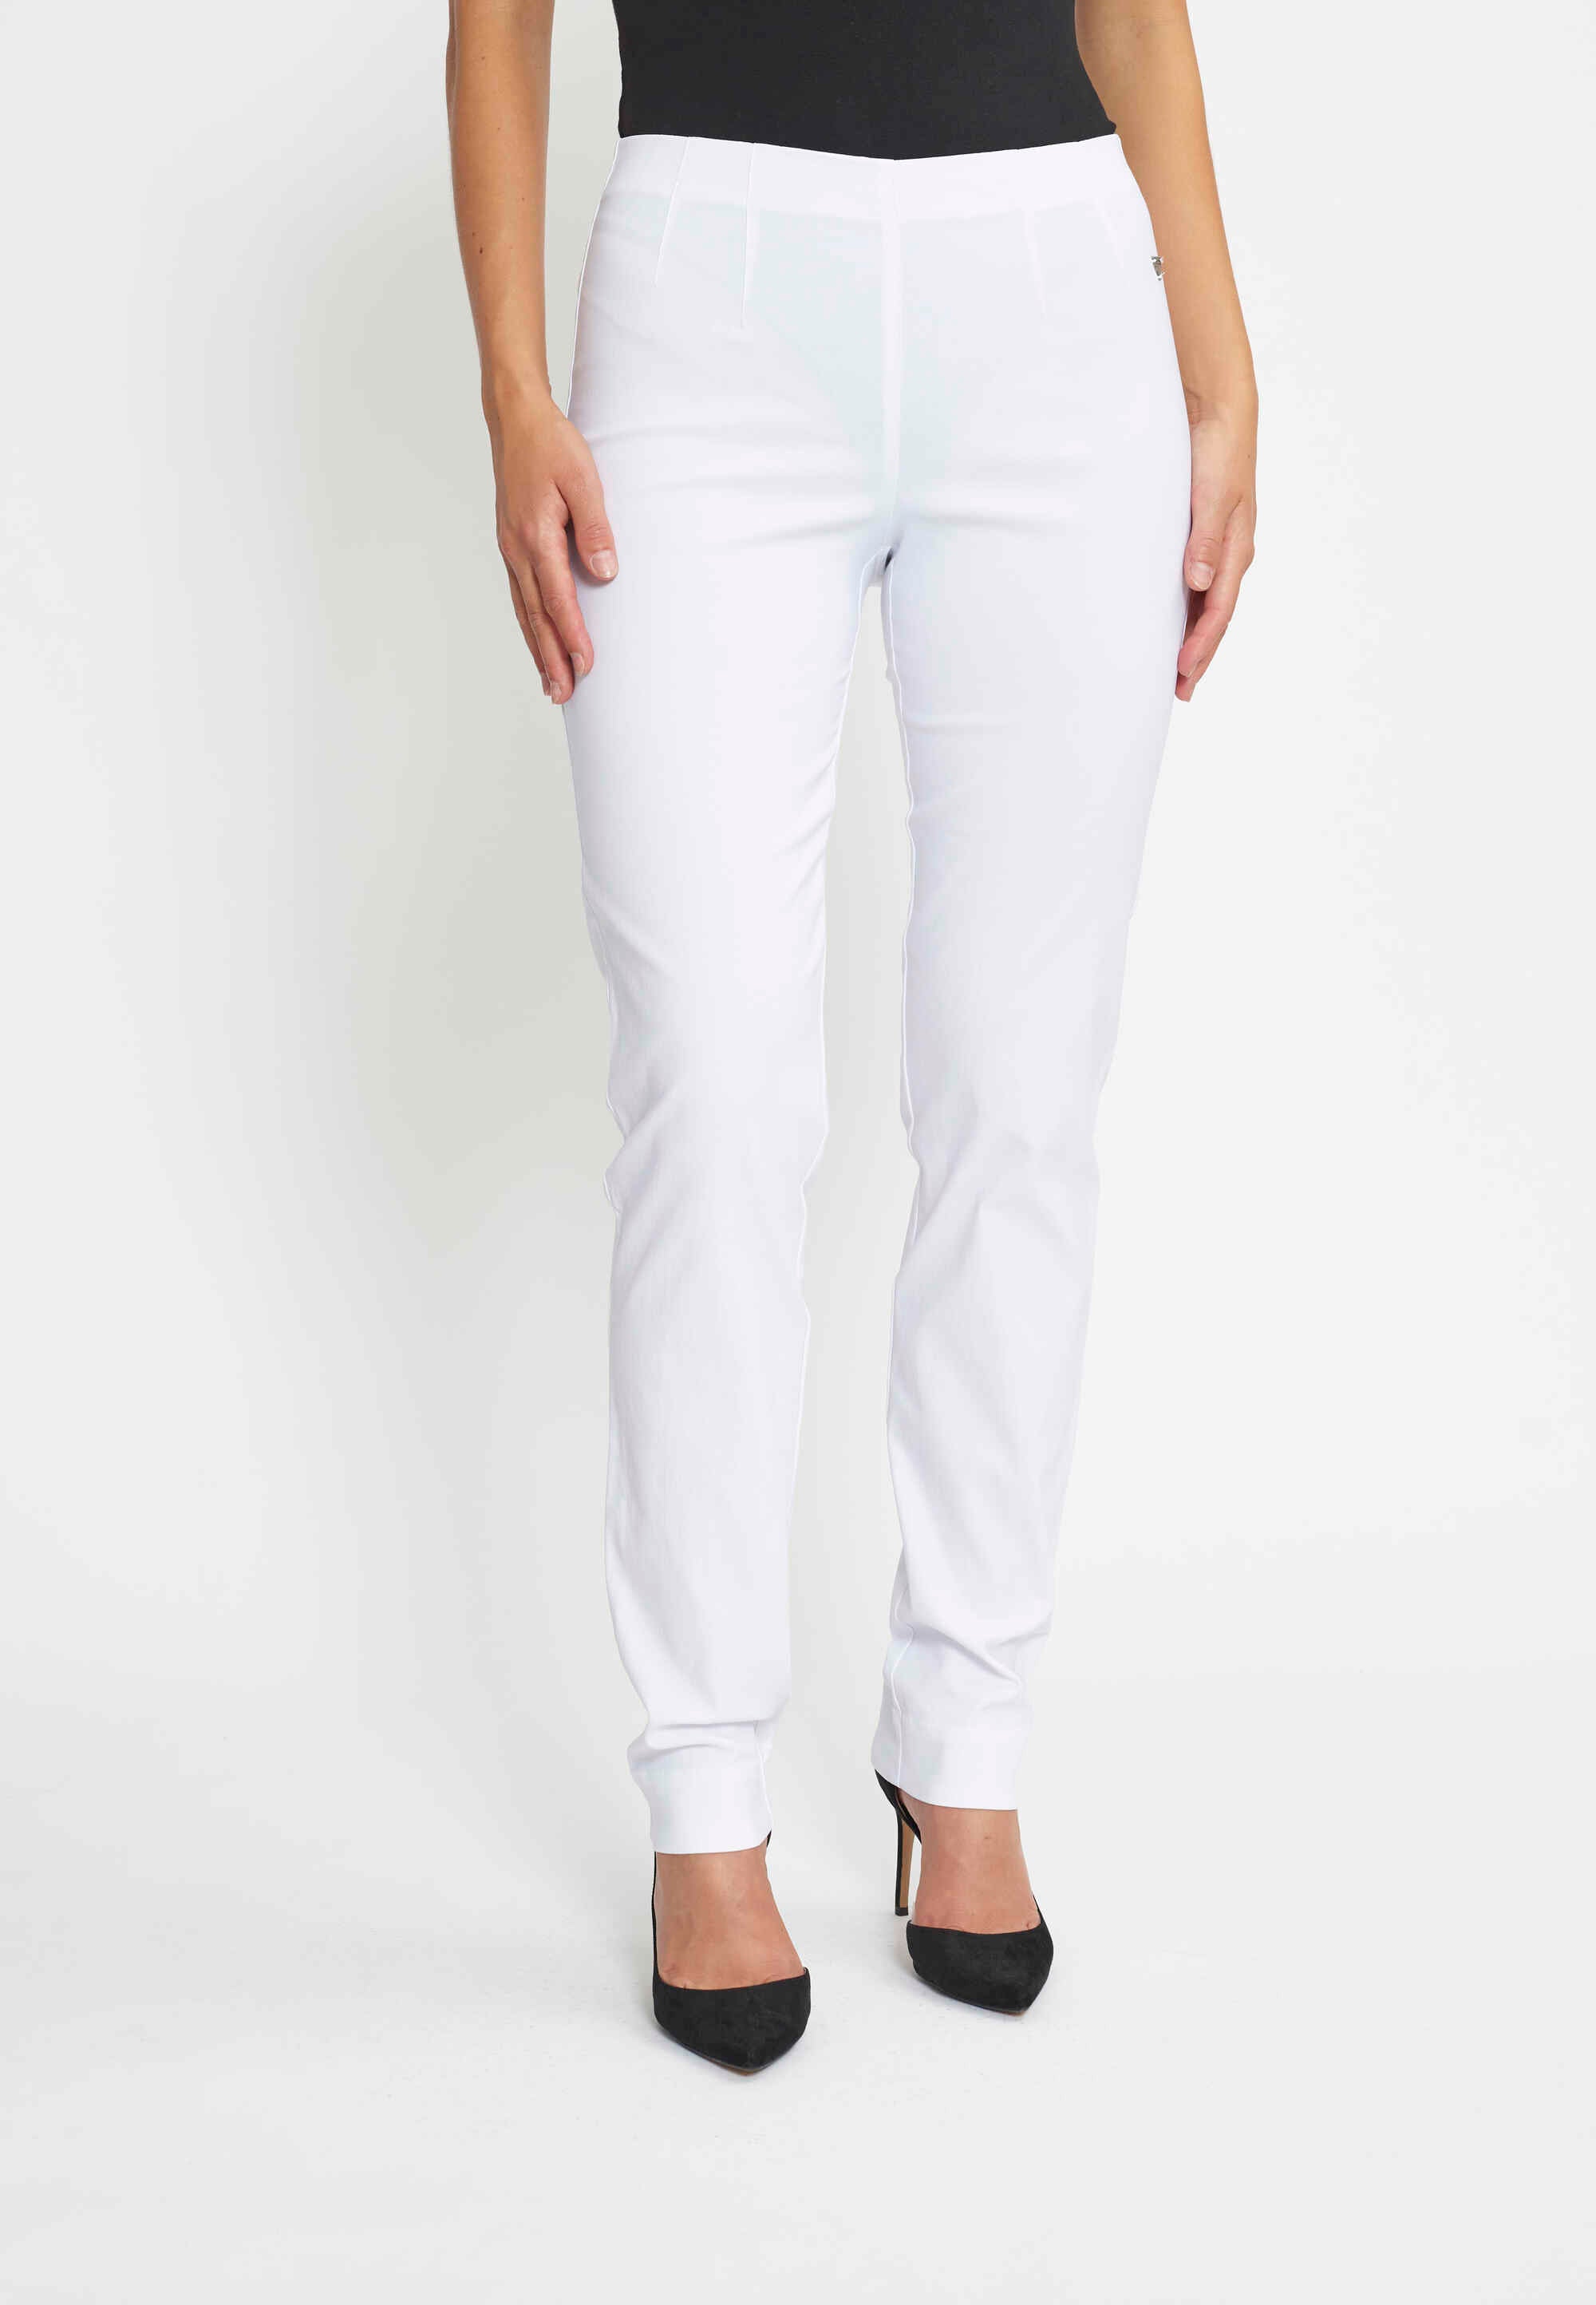 LAURIE  Betty Regular - Long Length Trousers REGULAR 10970 White